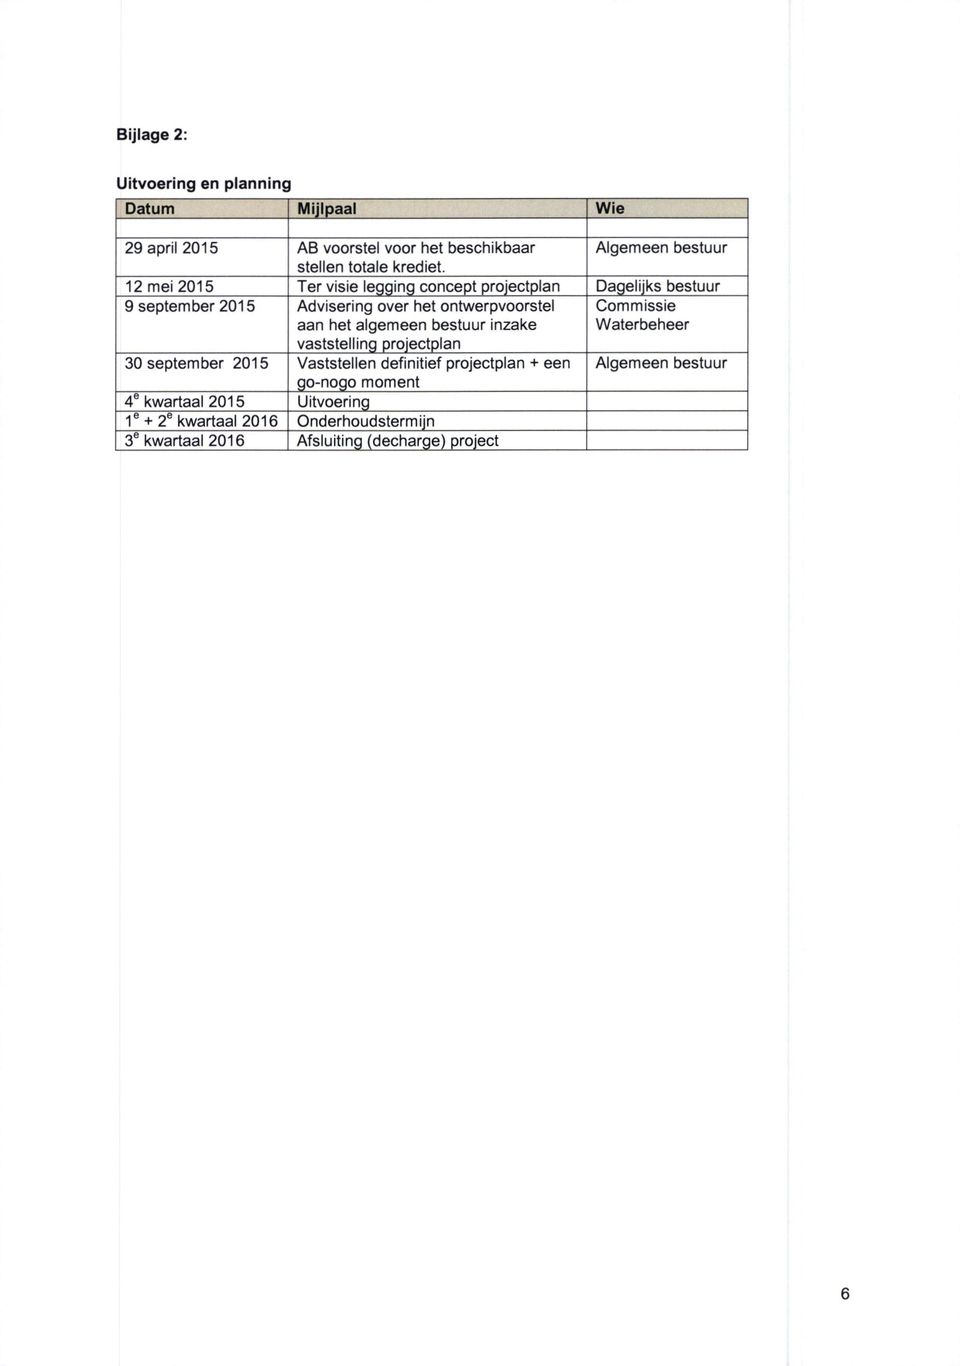 12 mei 2015 Ter visie legging concept projectplan Dagelijks bestuur 9 september 2015 Advisering over het ontwerpvoorstel aan het